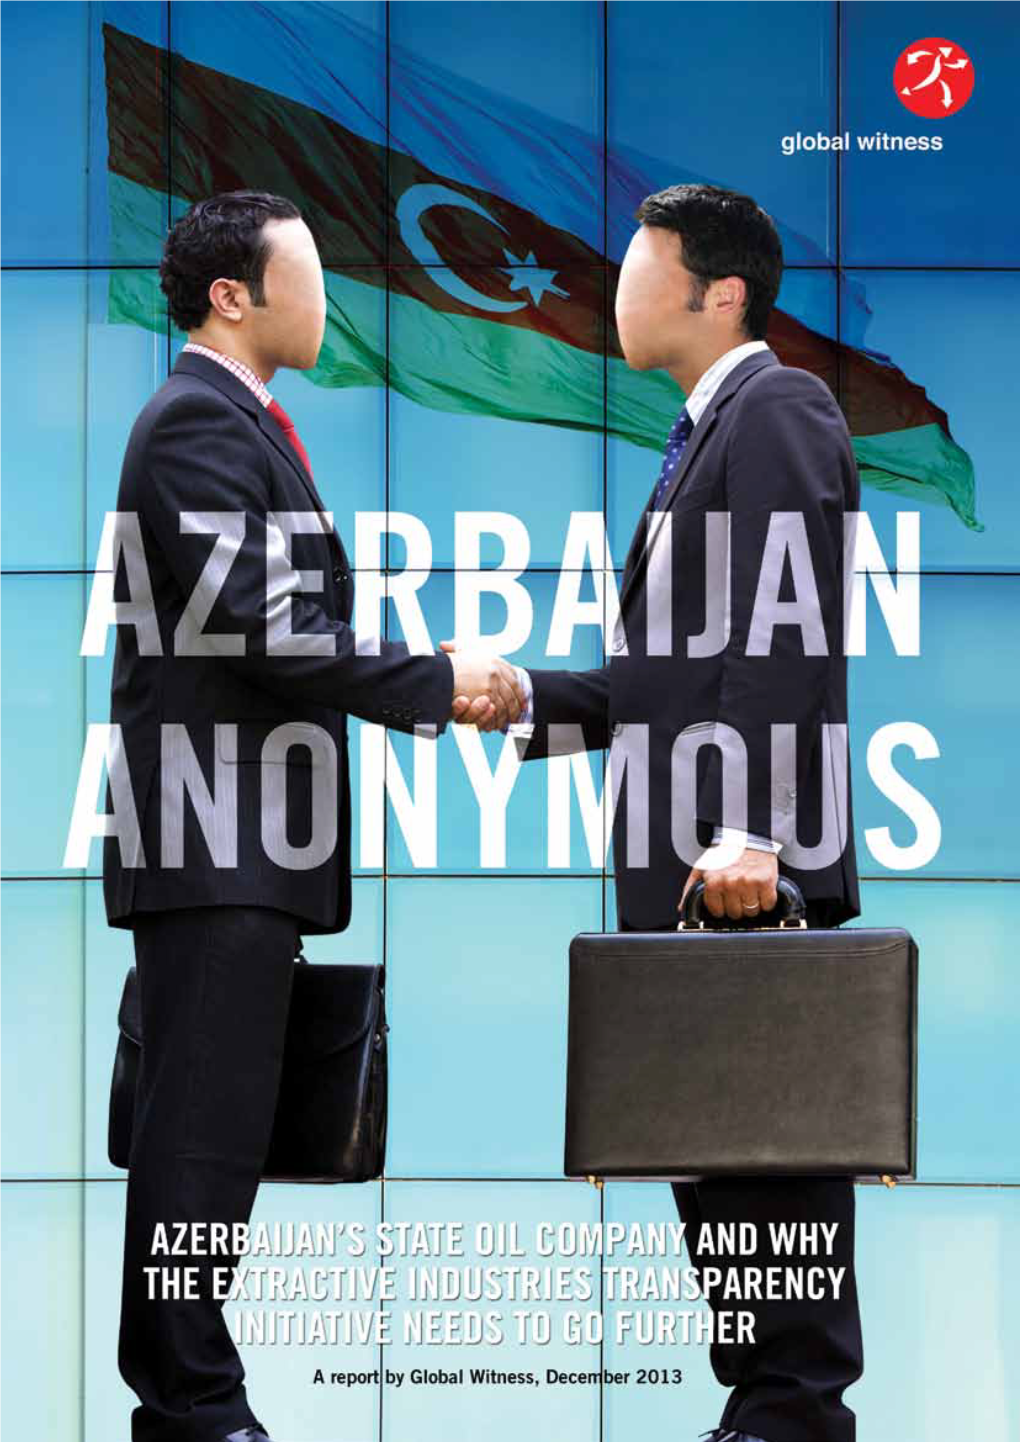 Azerbaijan Anonymous